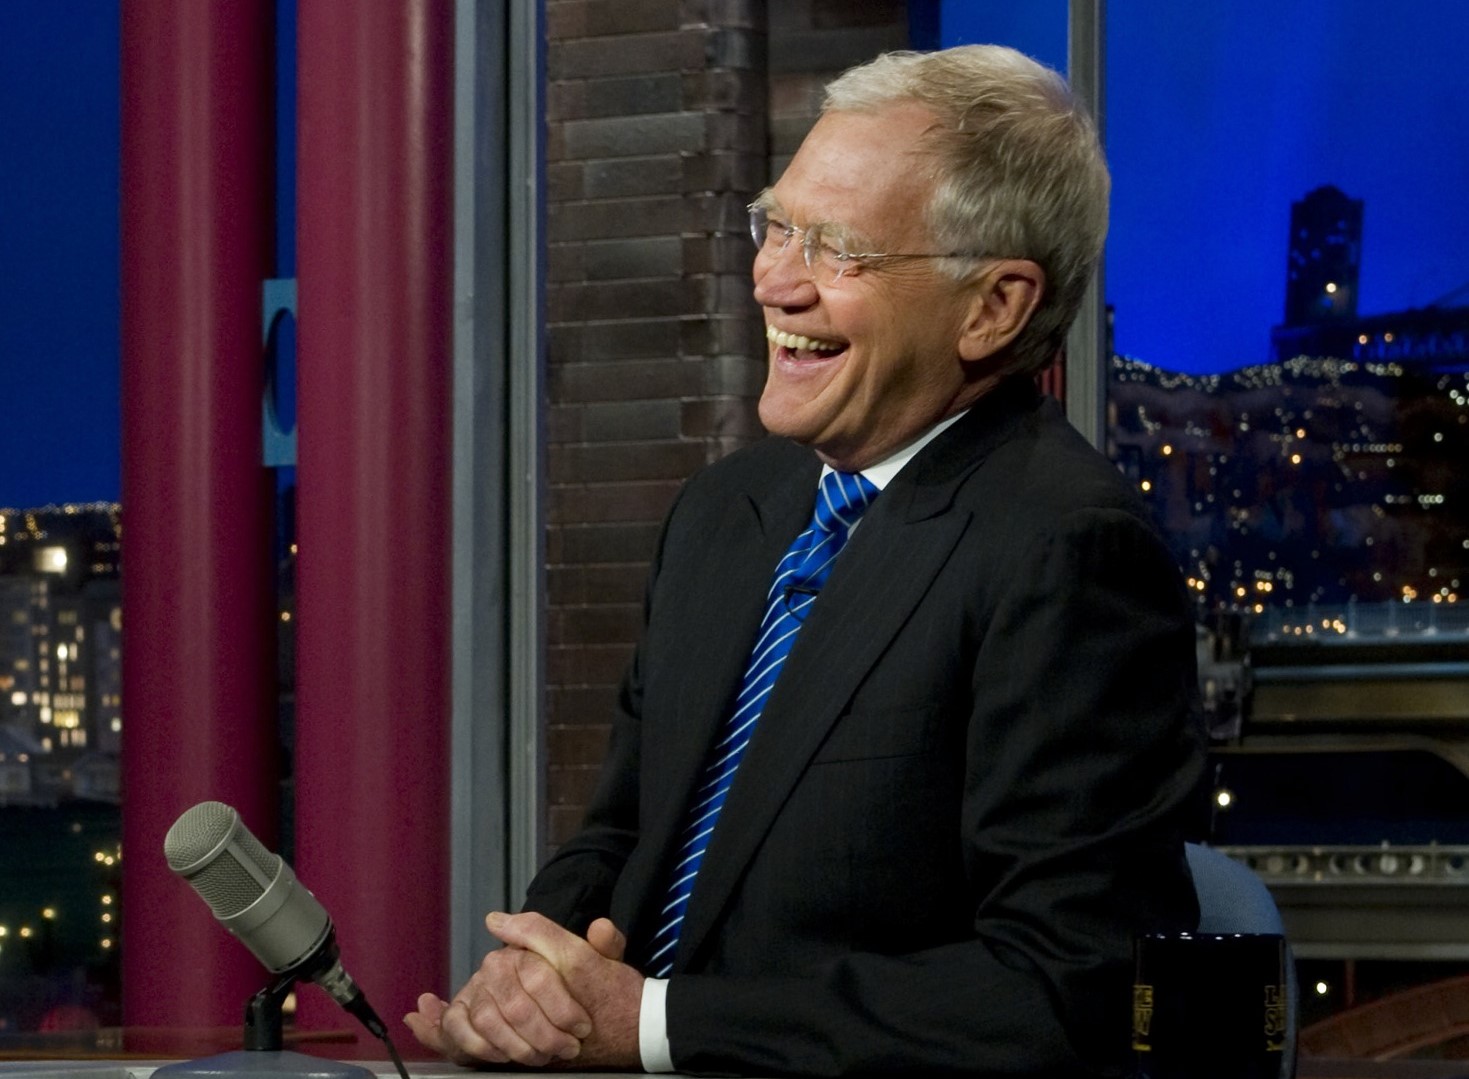 David Letterman running